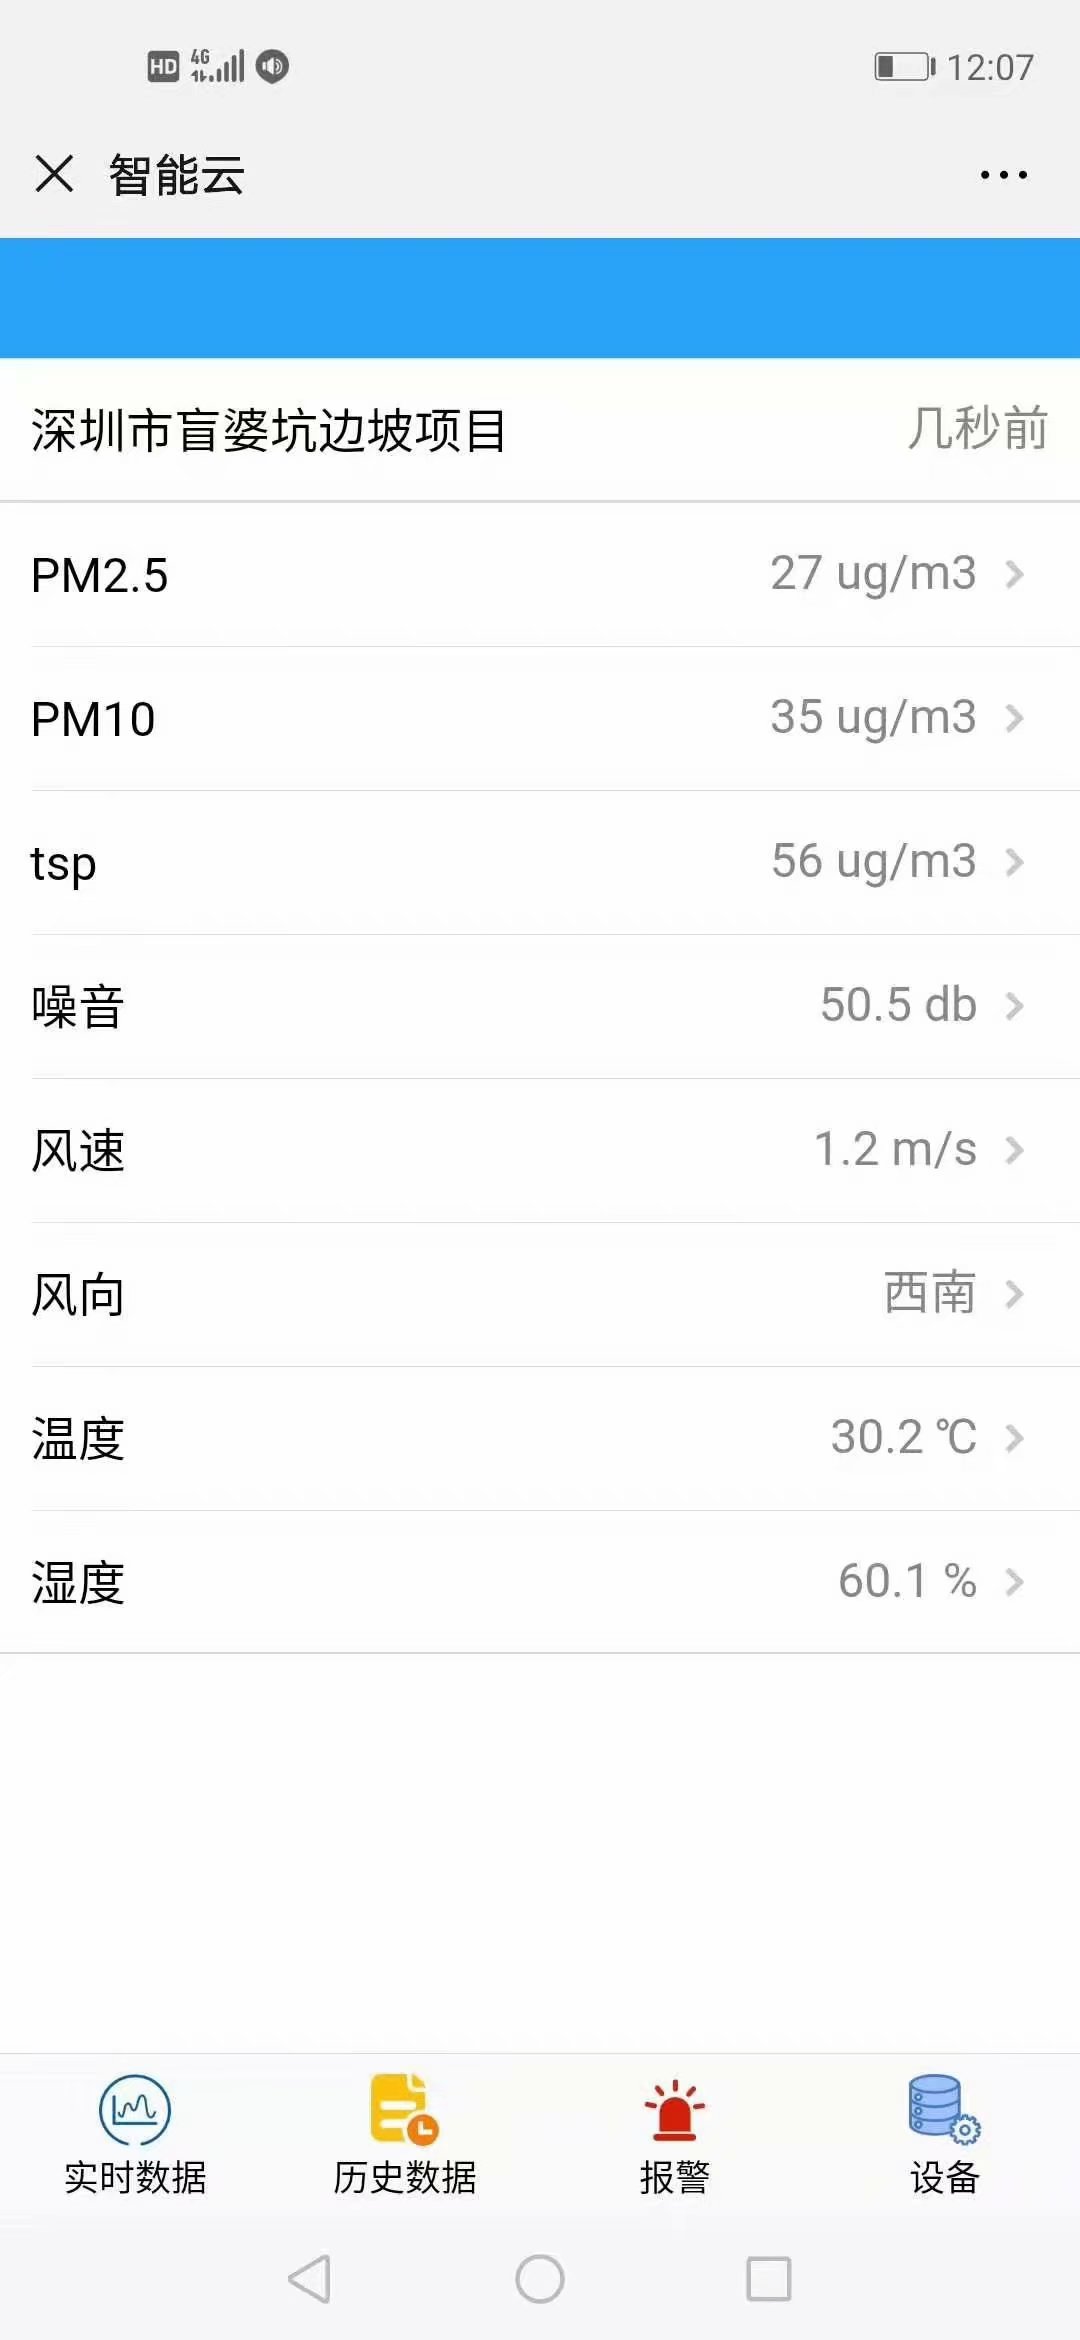 上海CCEP噪音扬尘监测系统符合环保局要求